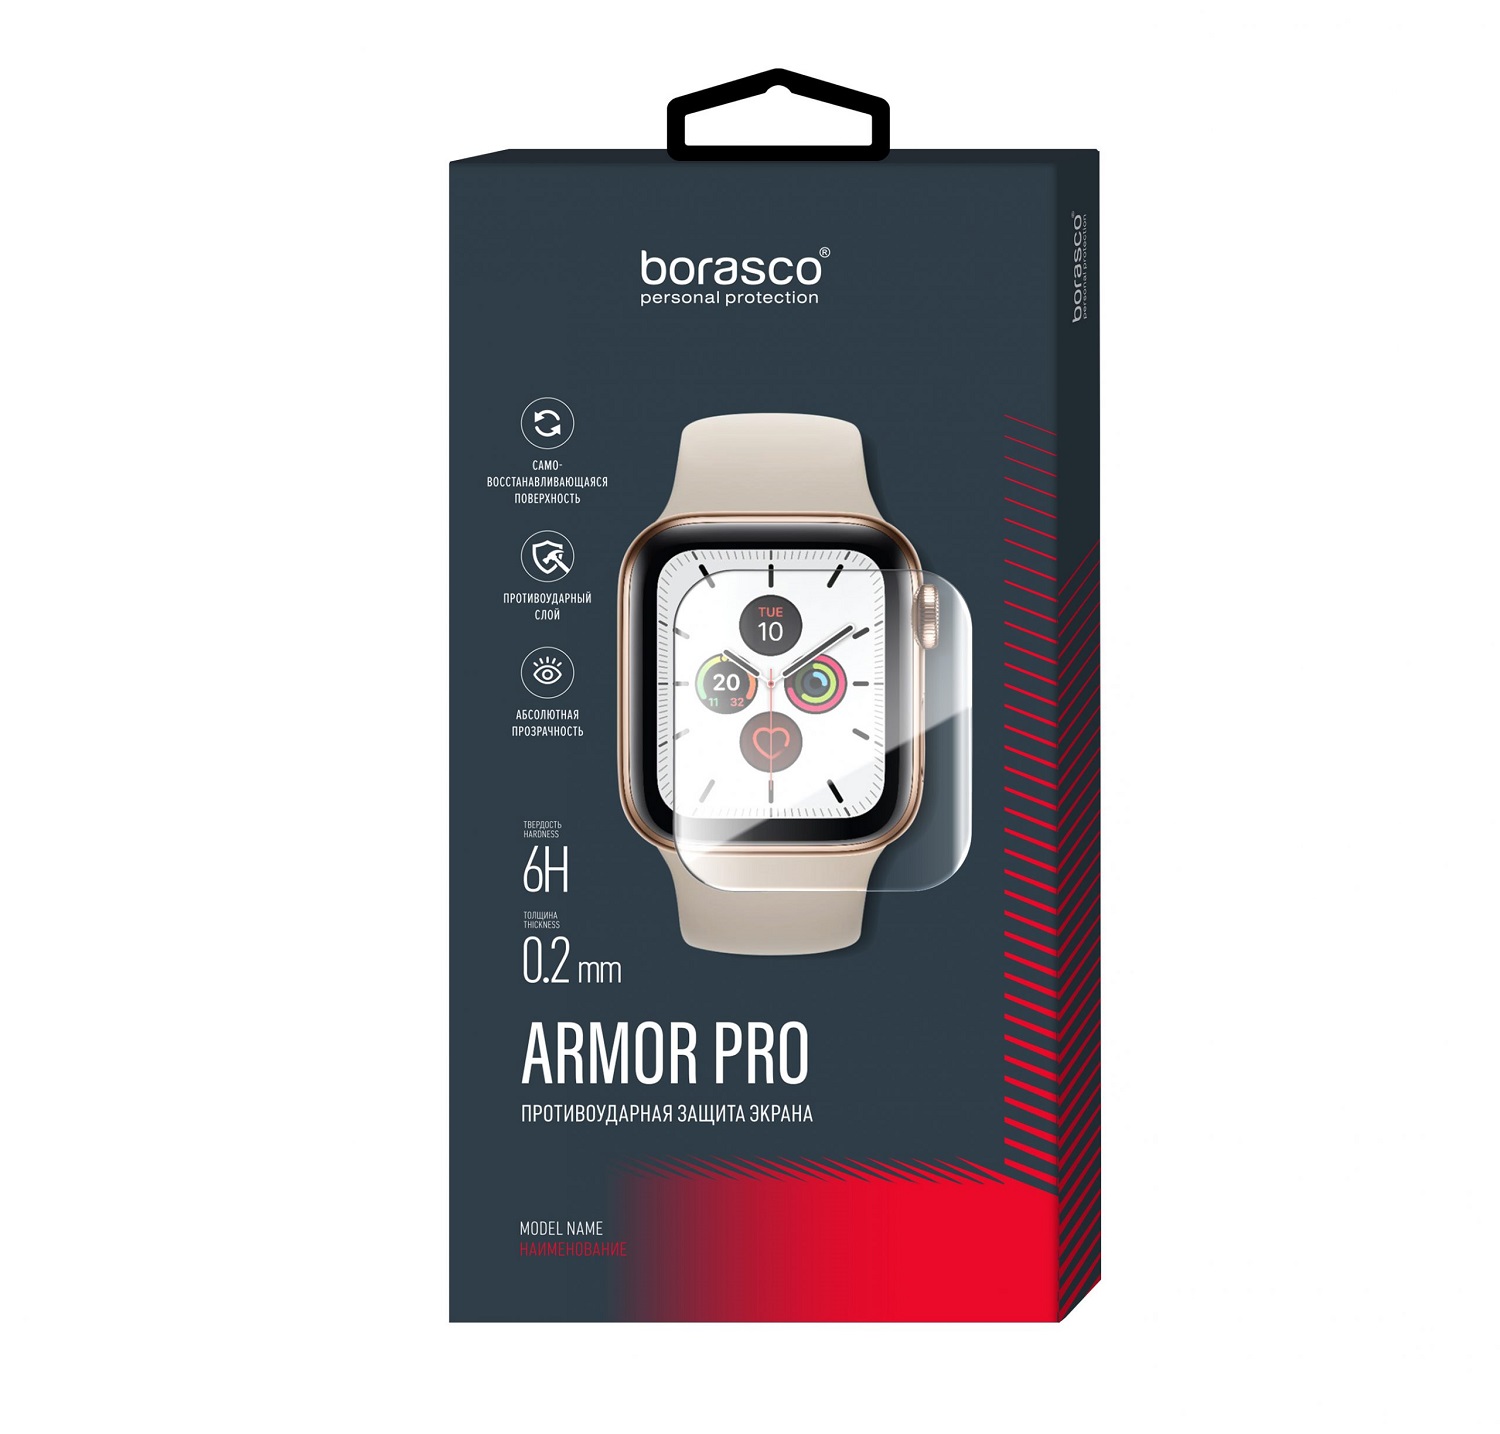 Защита экрана BoraSCO Armor Pro для Xiaomi Mi Watch защита экрана borasco armor pro для honor watch se матовый